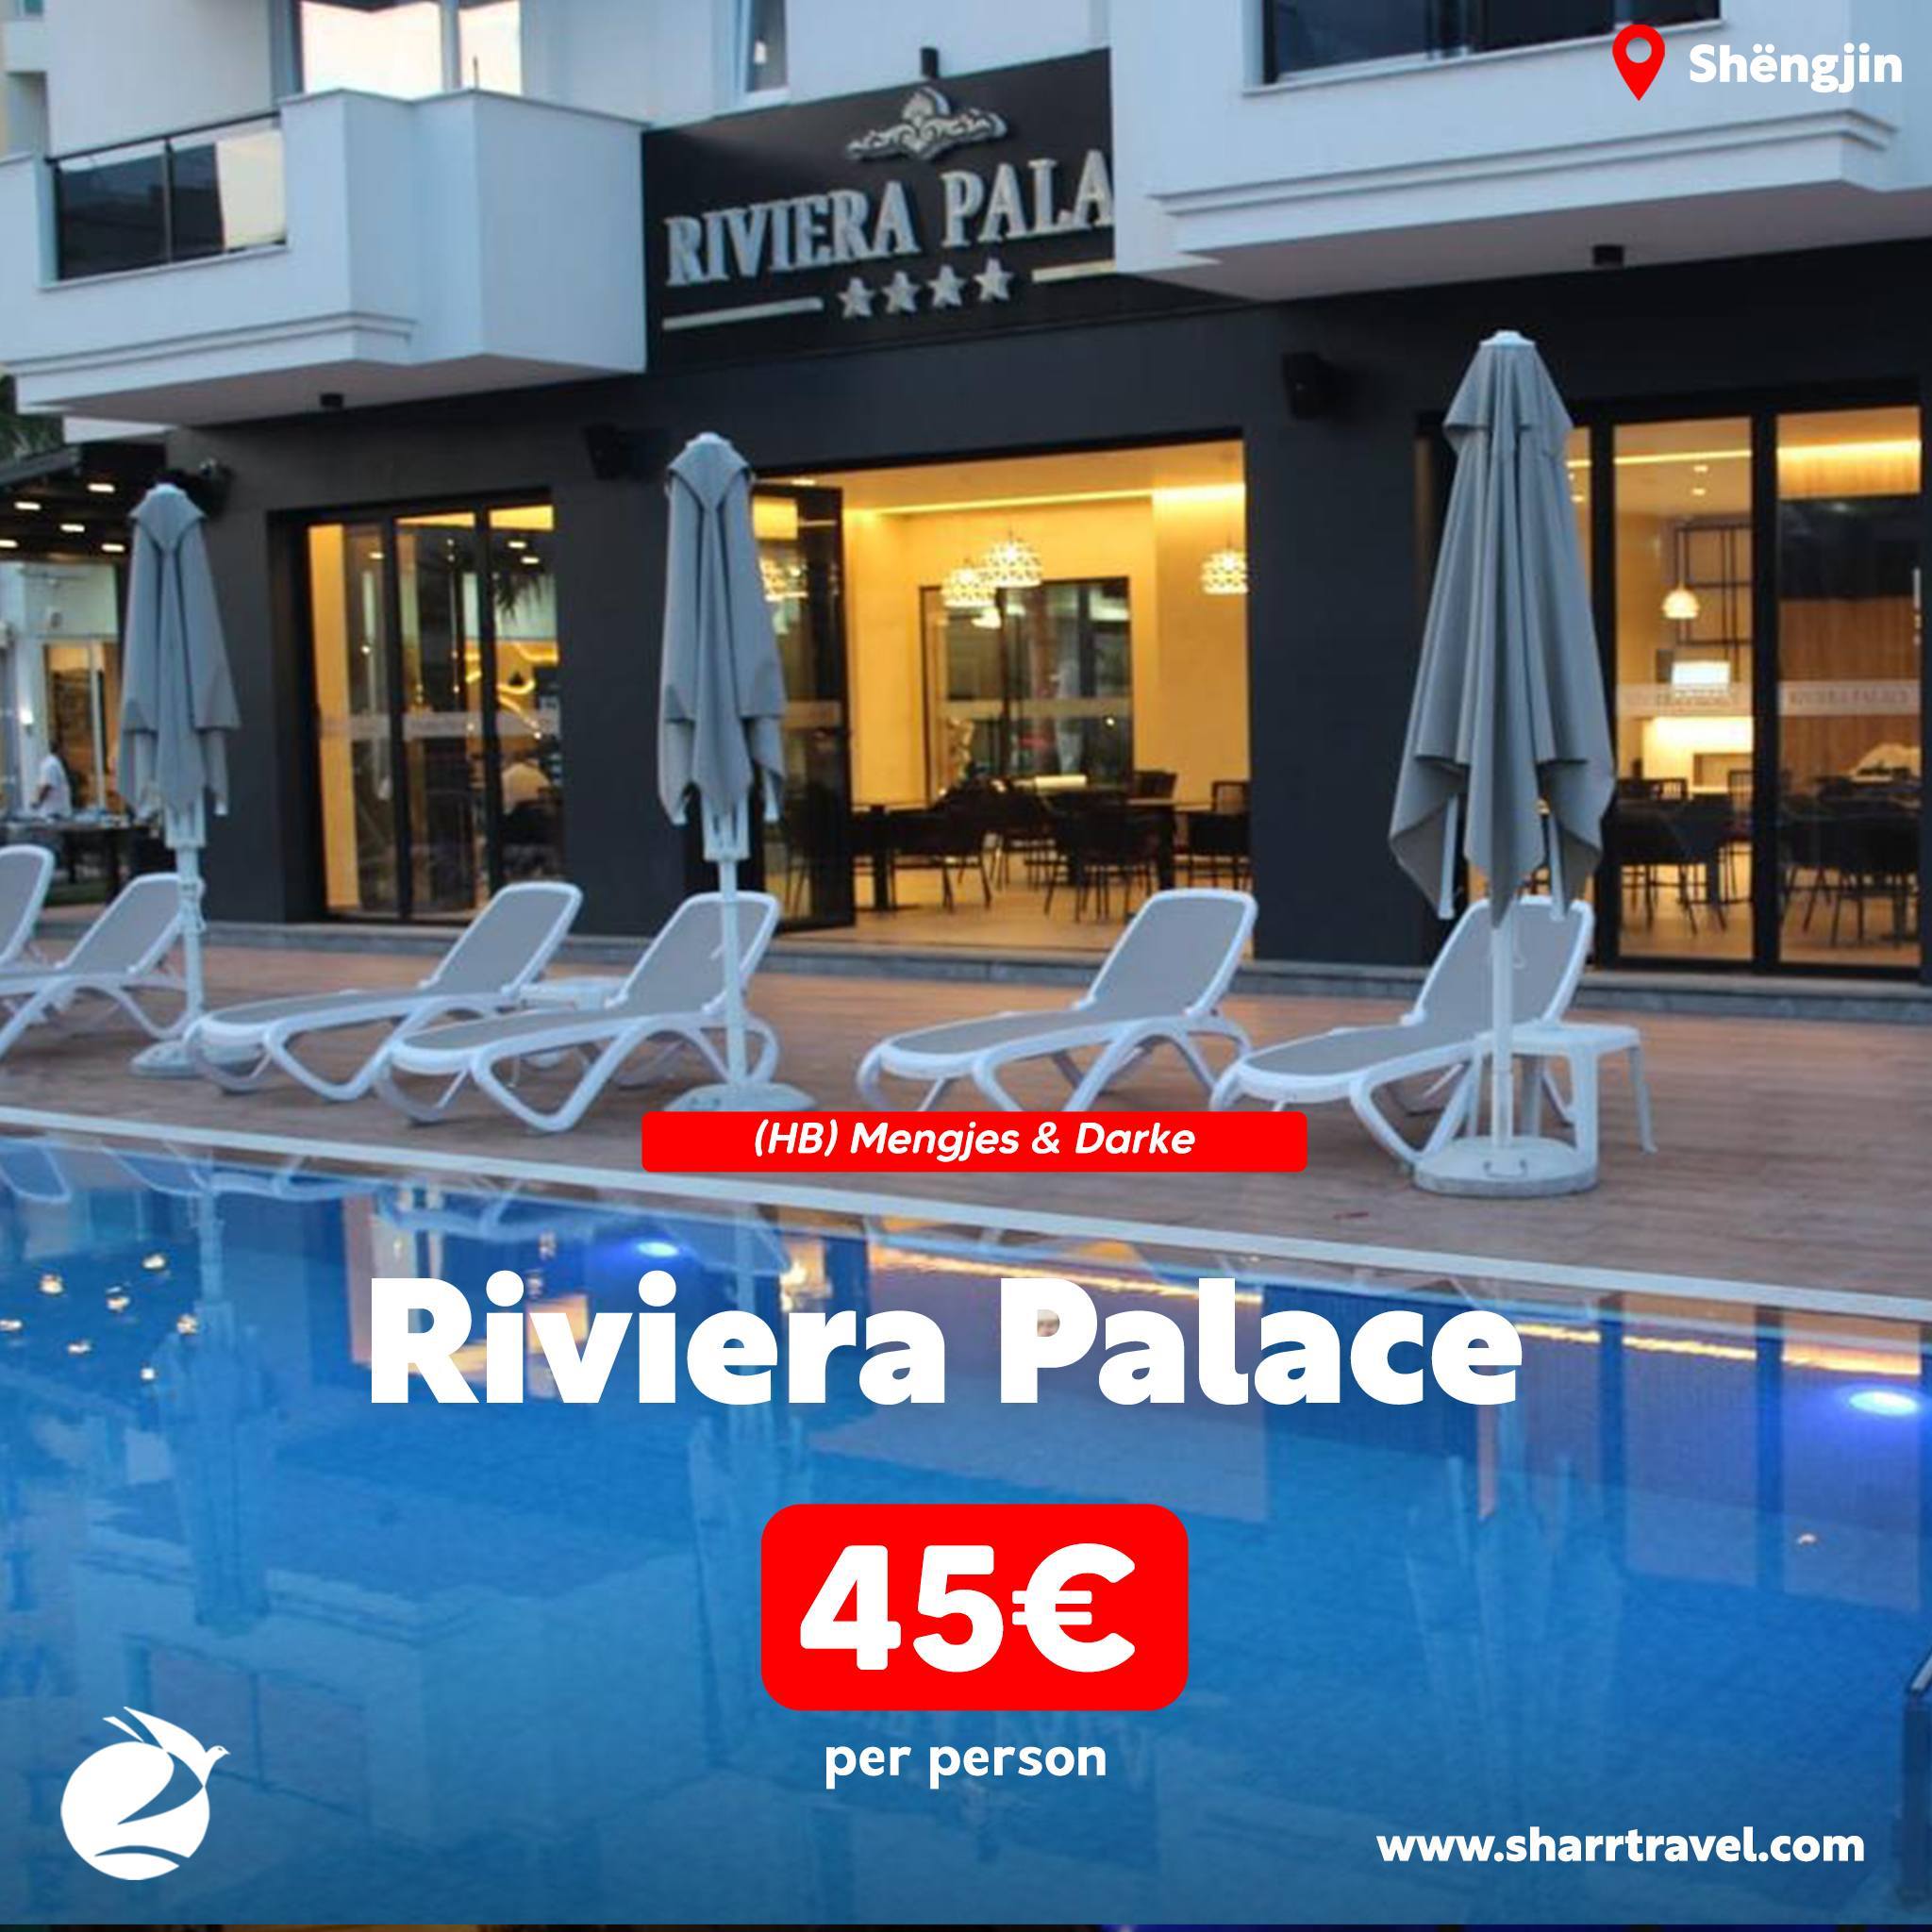 Pusho dhe argëtohu në “Riviera Palace” – Shëngjin me kompaninë “Sharr Travel”